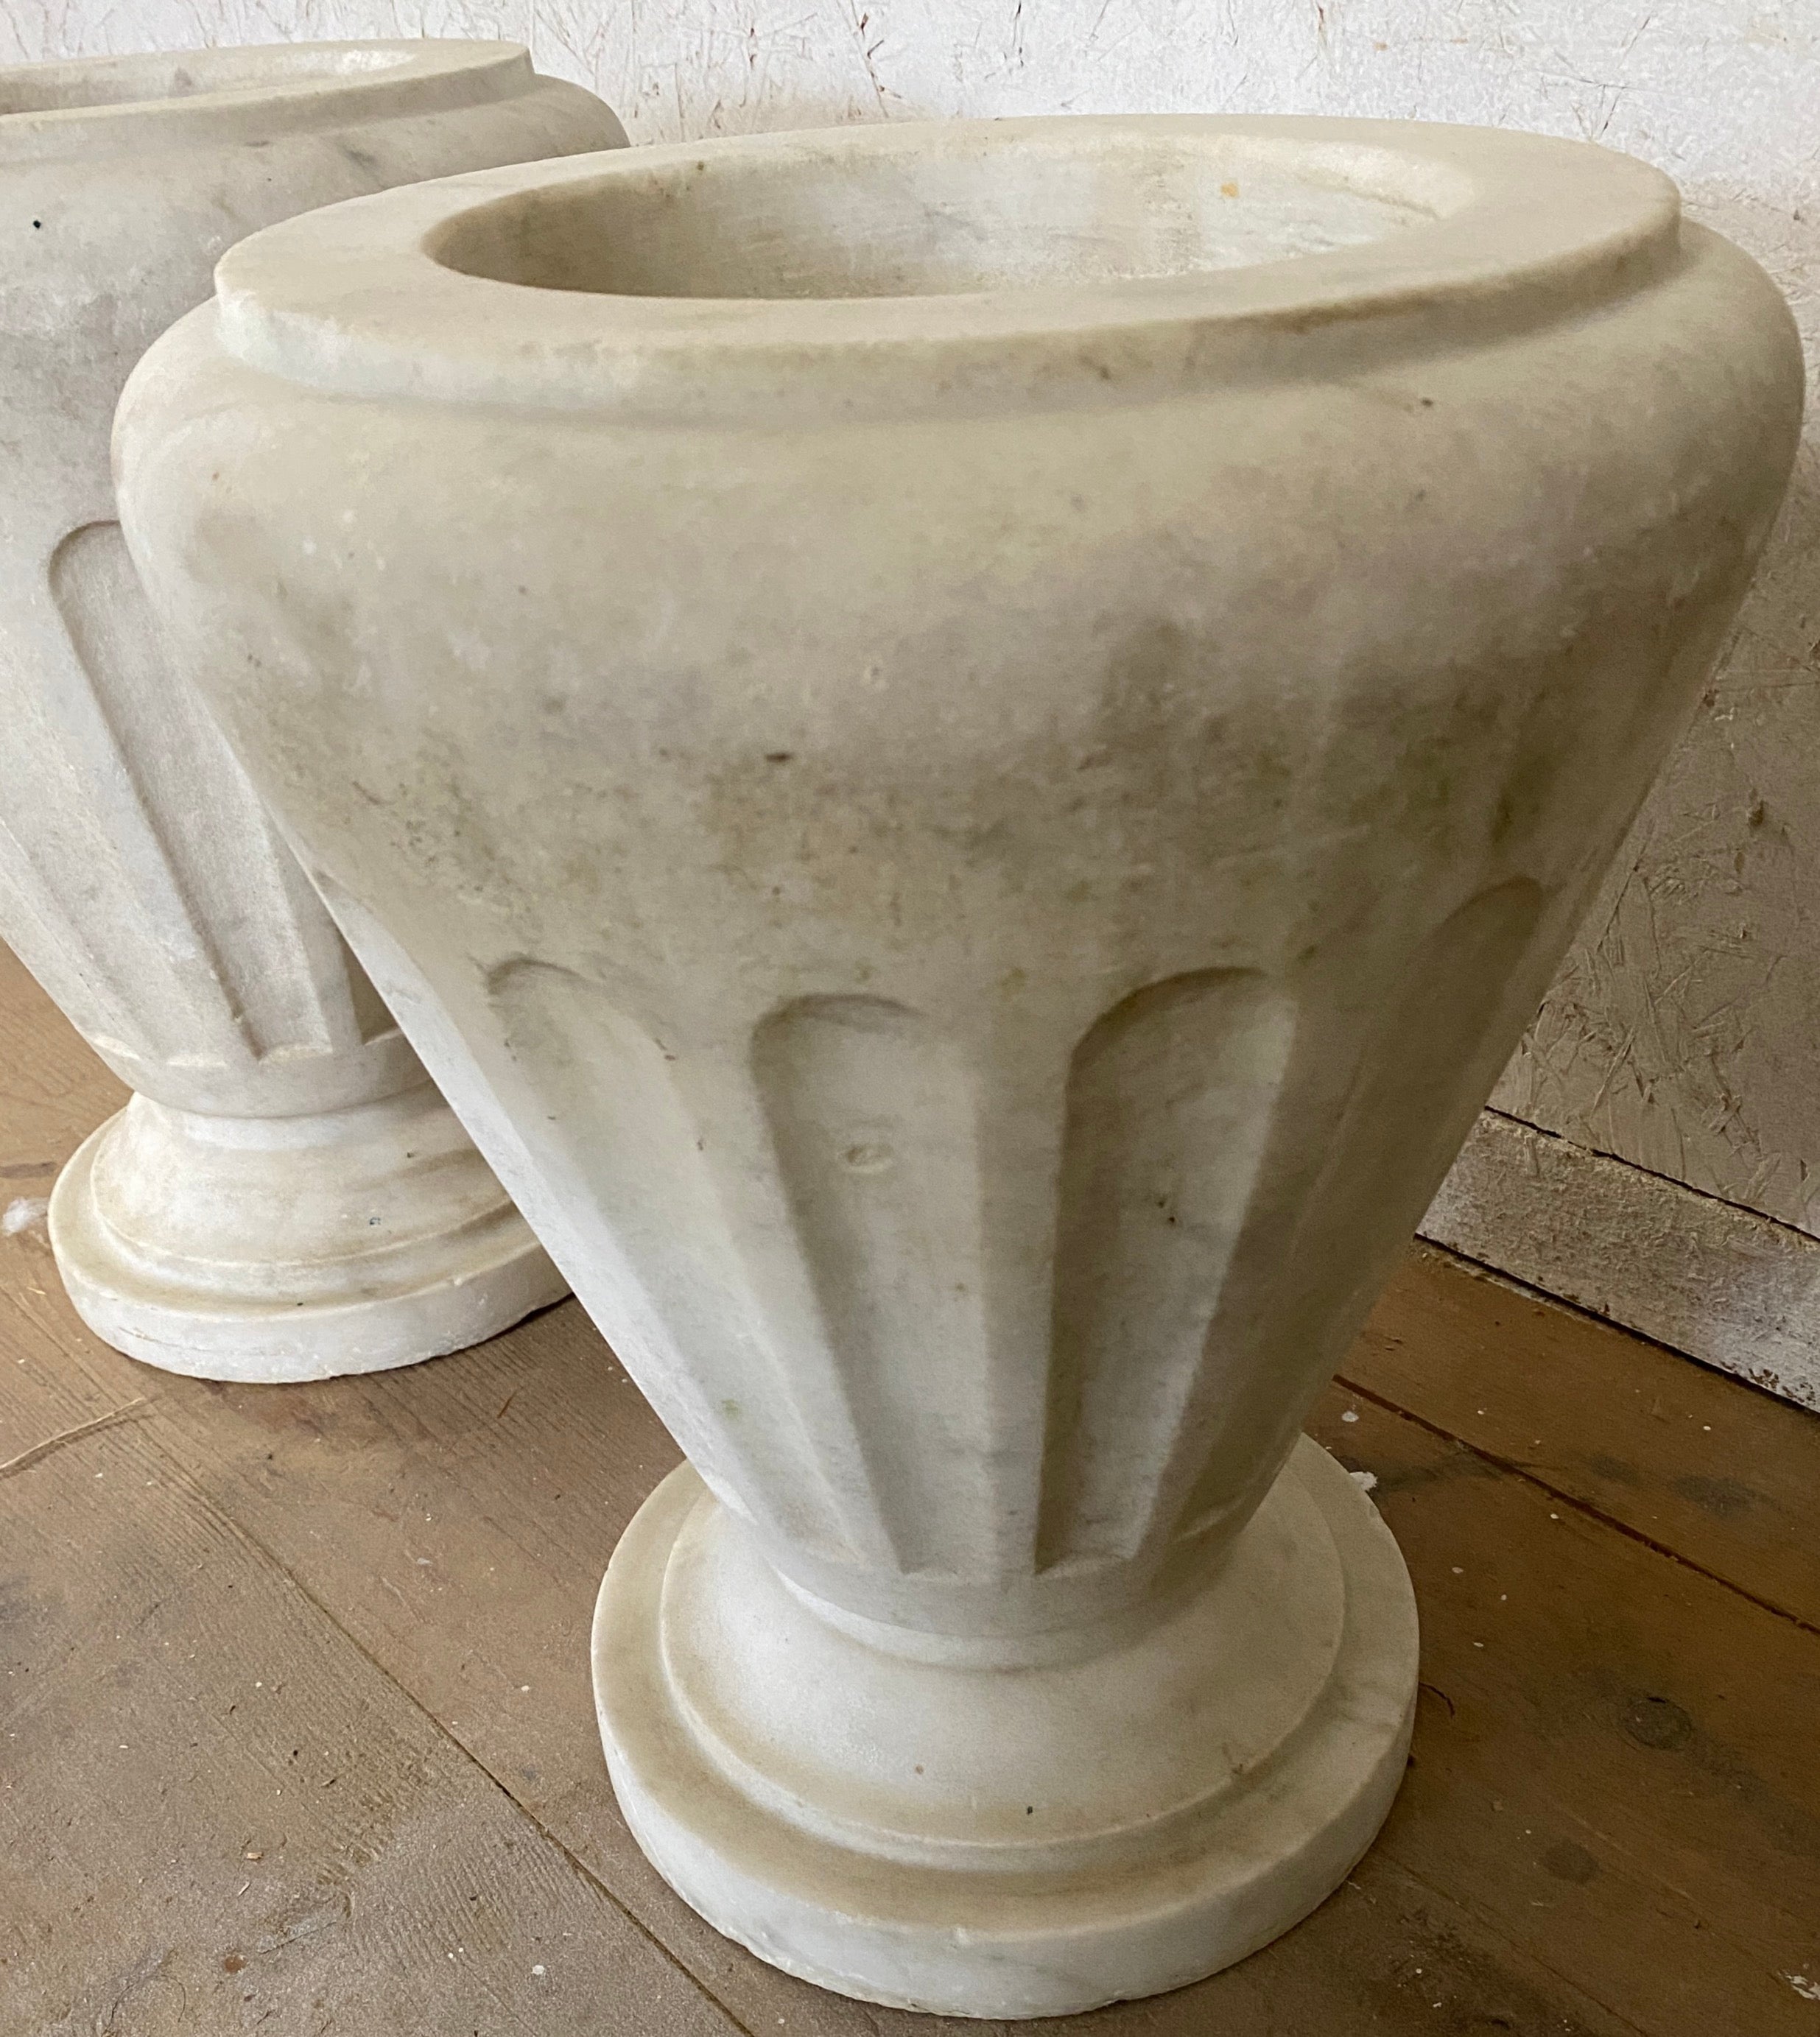 Ein äußerst attraktives Paar italienischer Urnen aus weißem Carrara-Marmor im neoklassischen Stil. Elegante, geriffelte Körper verleihen ihm ein klares, modernes und zugleich klassisches Aussehen.  Der Marmor zeigt eine gealterte Patina, die ihm